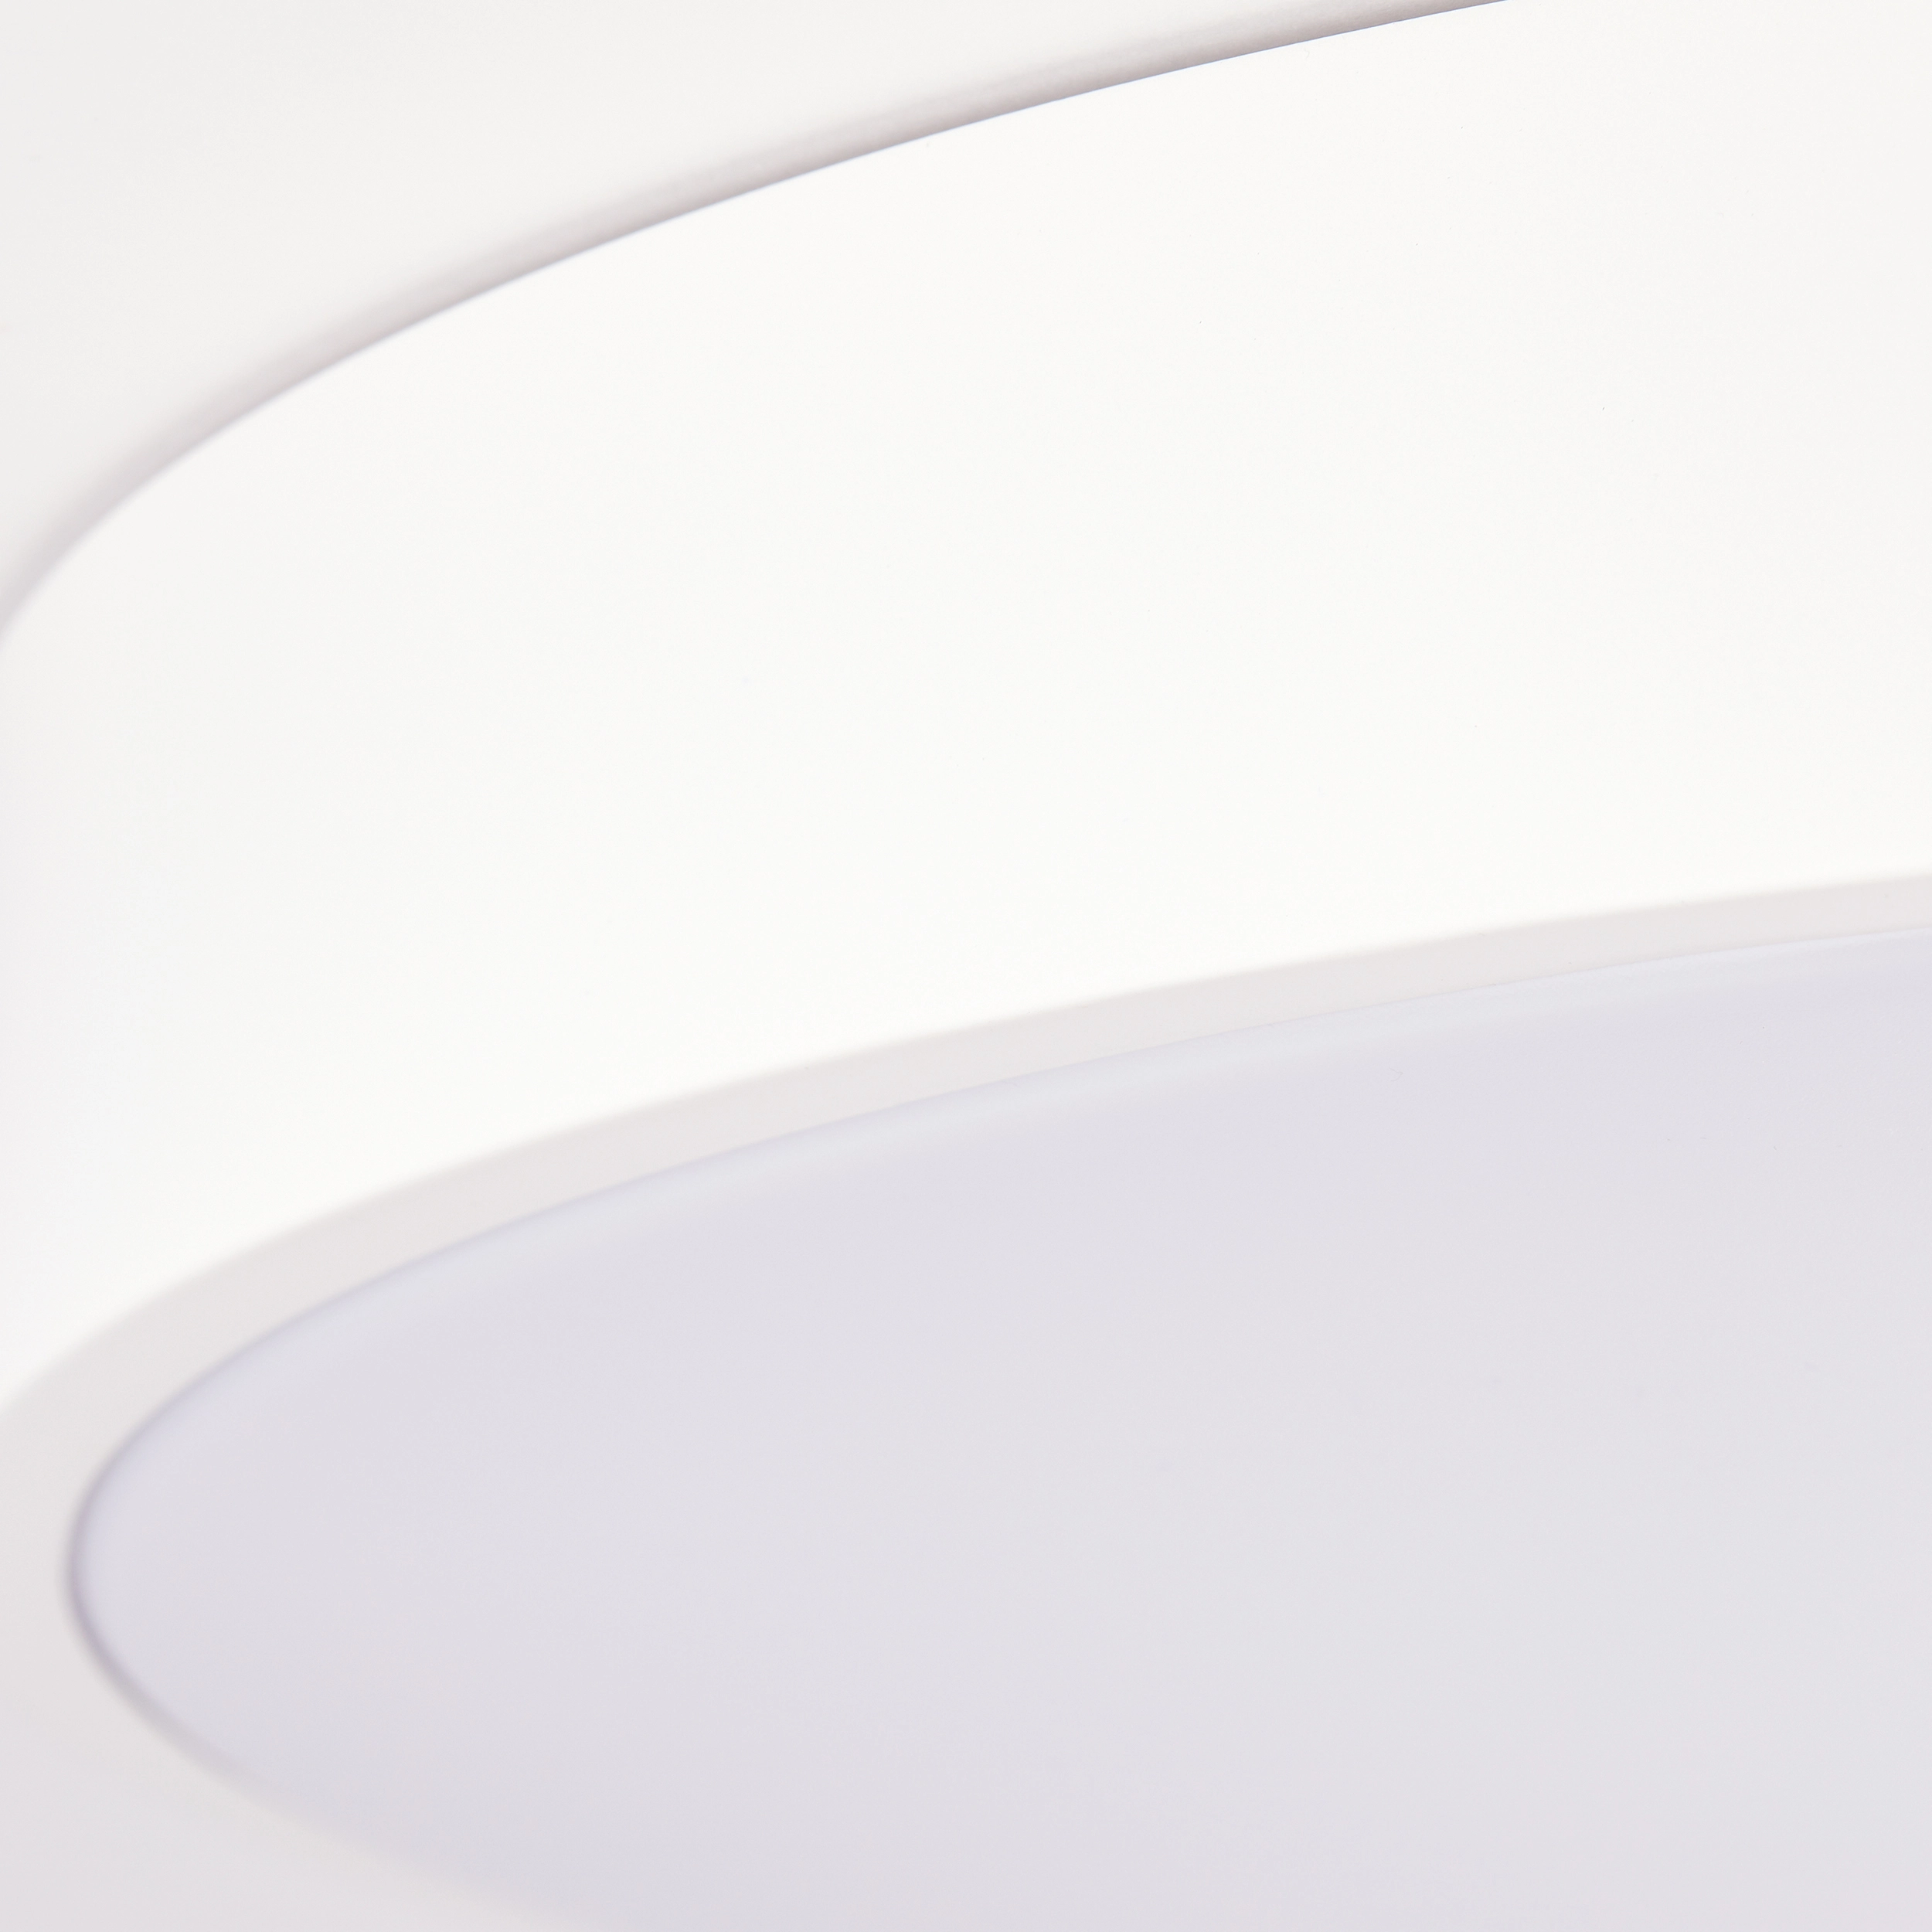 Brilliant LED-Deckenleuchte Slimline Ø 49 cm Sand und Weiß kaufen bei OBI